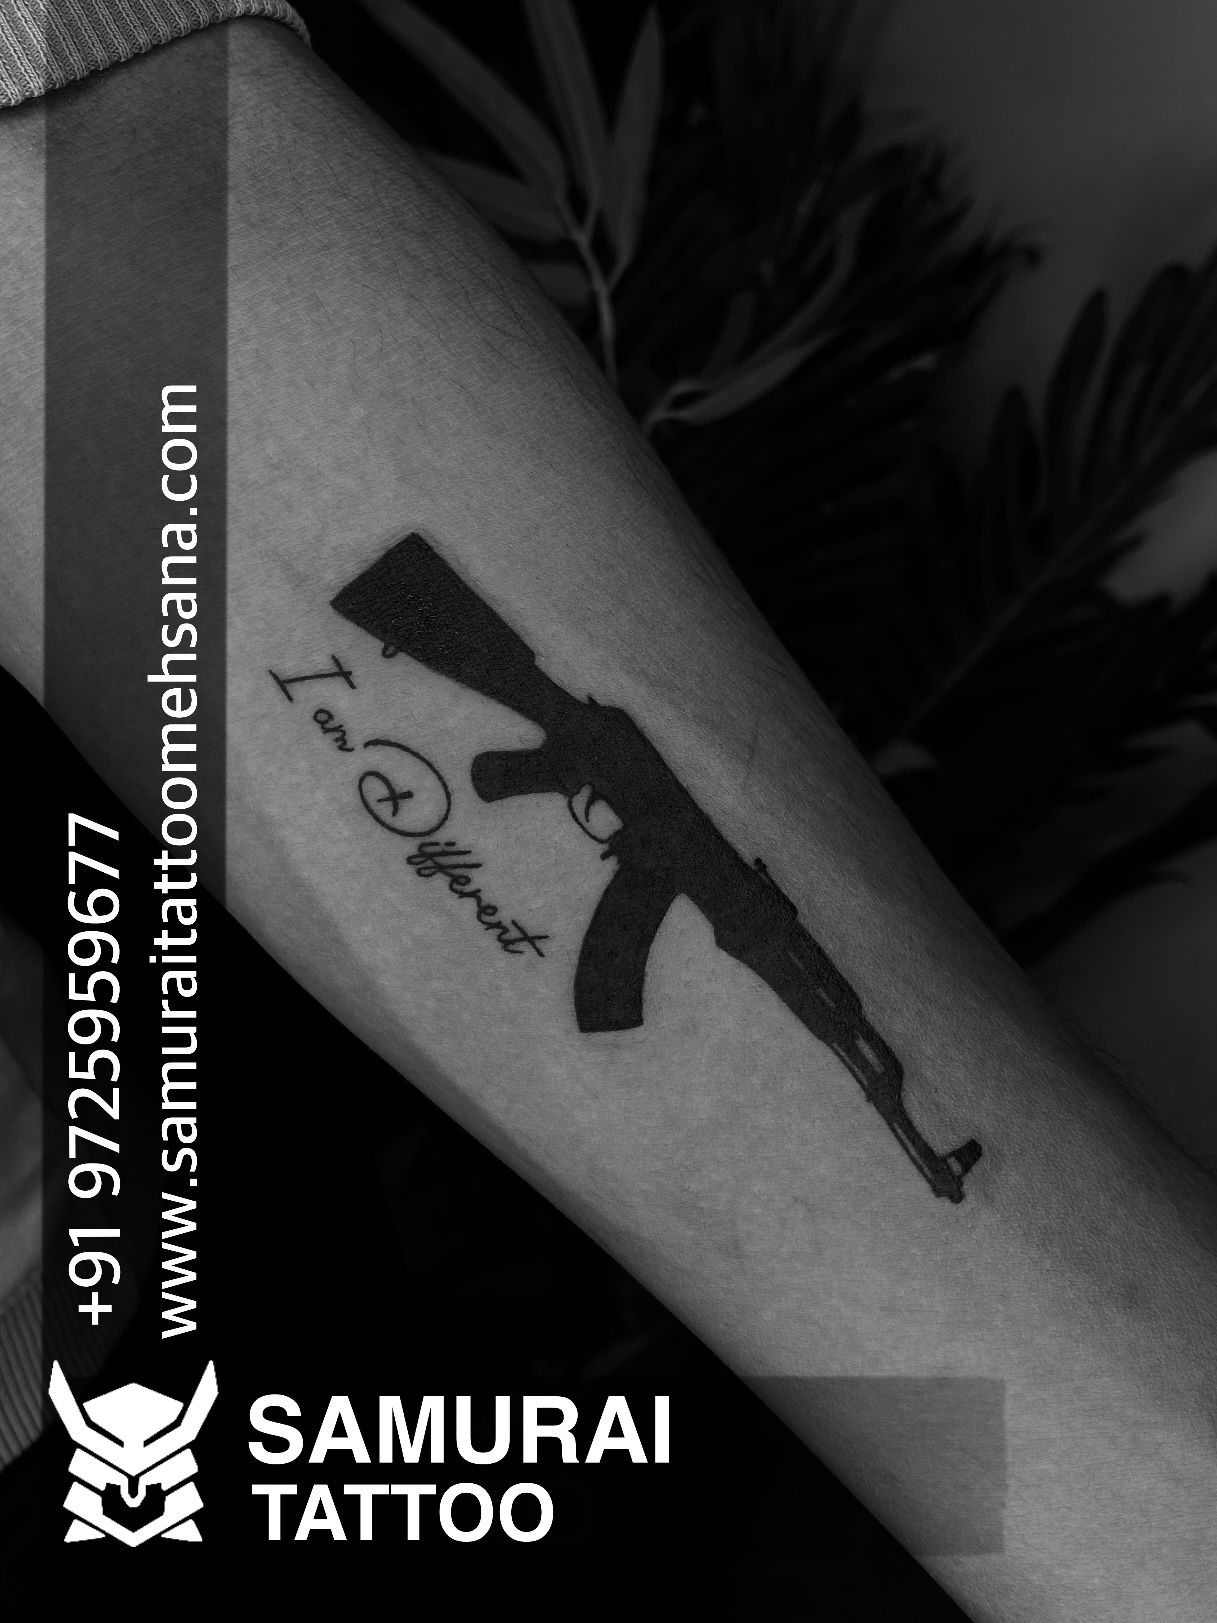 AK-47 Tattoo - Semi Permanent – Simply Inked